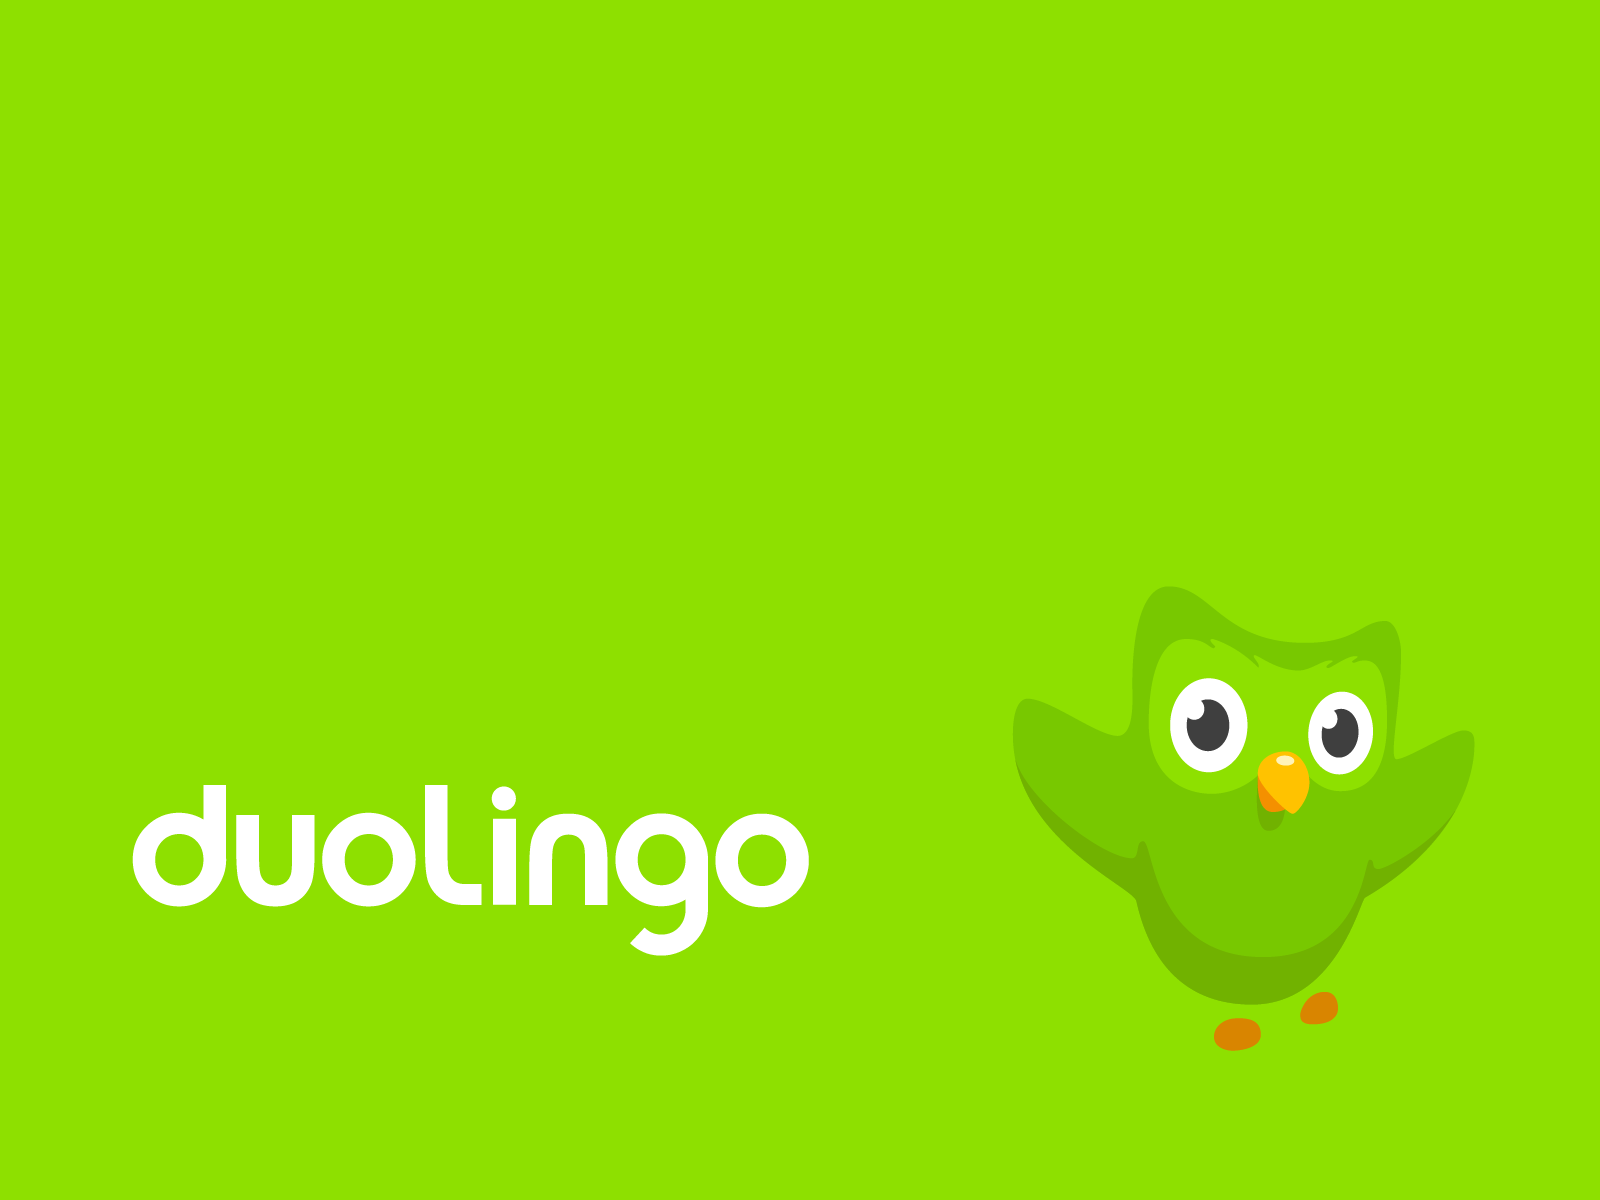 Here is a nice high quality Super Duolingo wallpaper  rduolingo